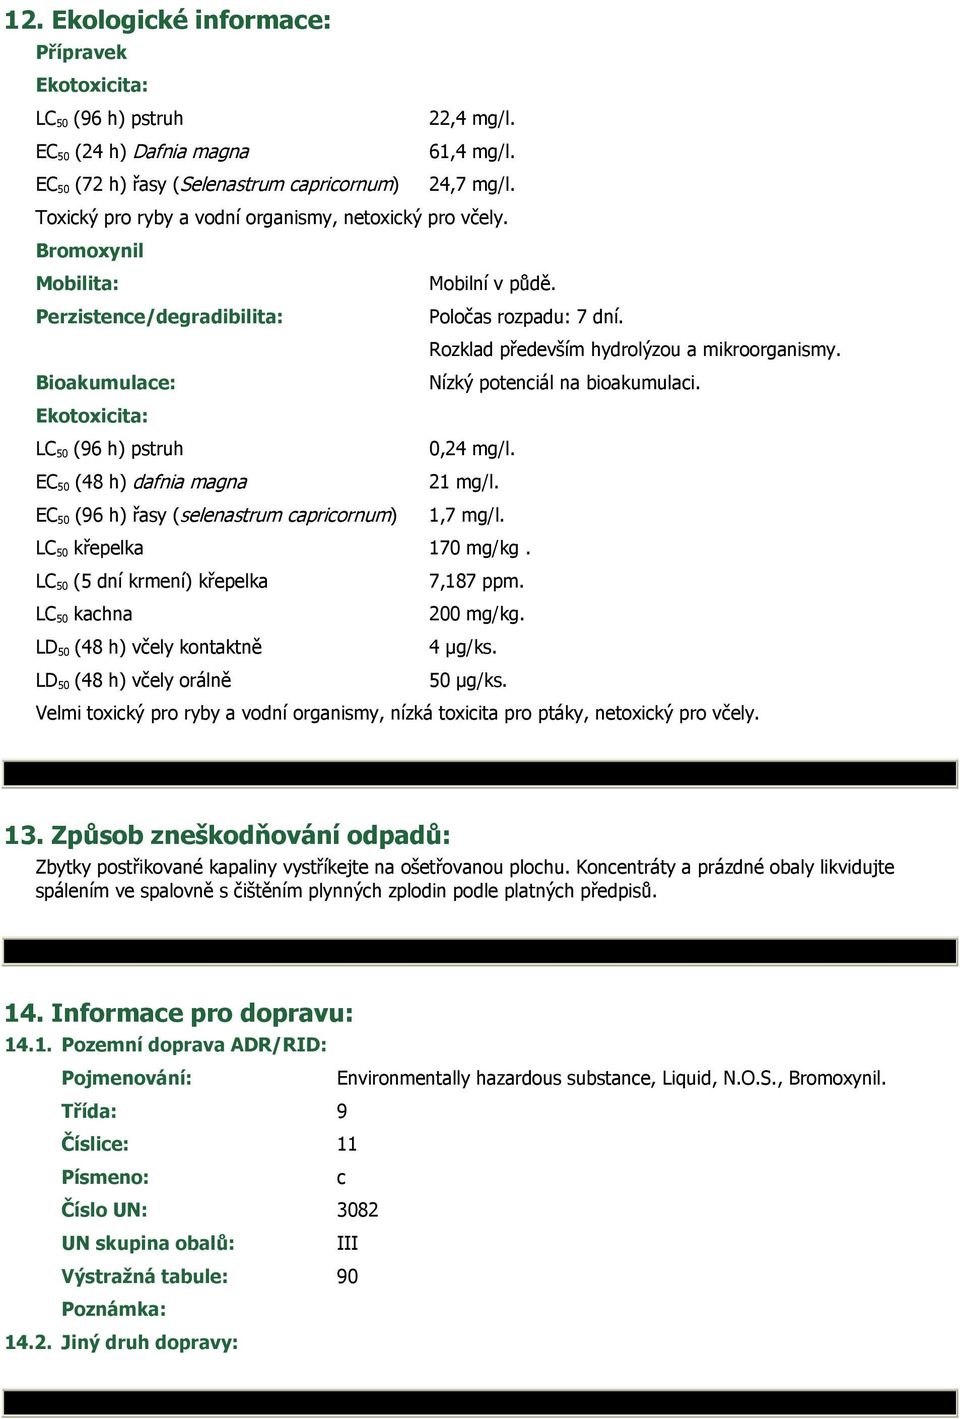 Bioakumulace: Nízký potenciál na bioakumulaci. Ekotoxicita: LC 50 (96 h) pstruh 0,24 mg/l. EC 50 (48 h) dafnia magna 21 mg/l. EC 50 (96 h) řasy (selenastrum capricornum) 1,7 mg/l.